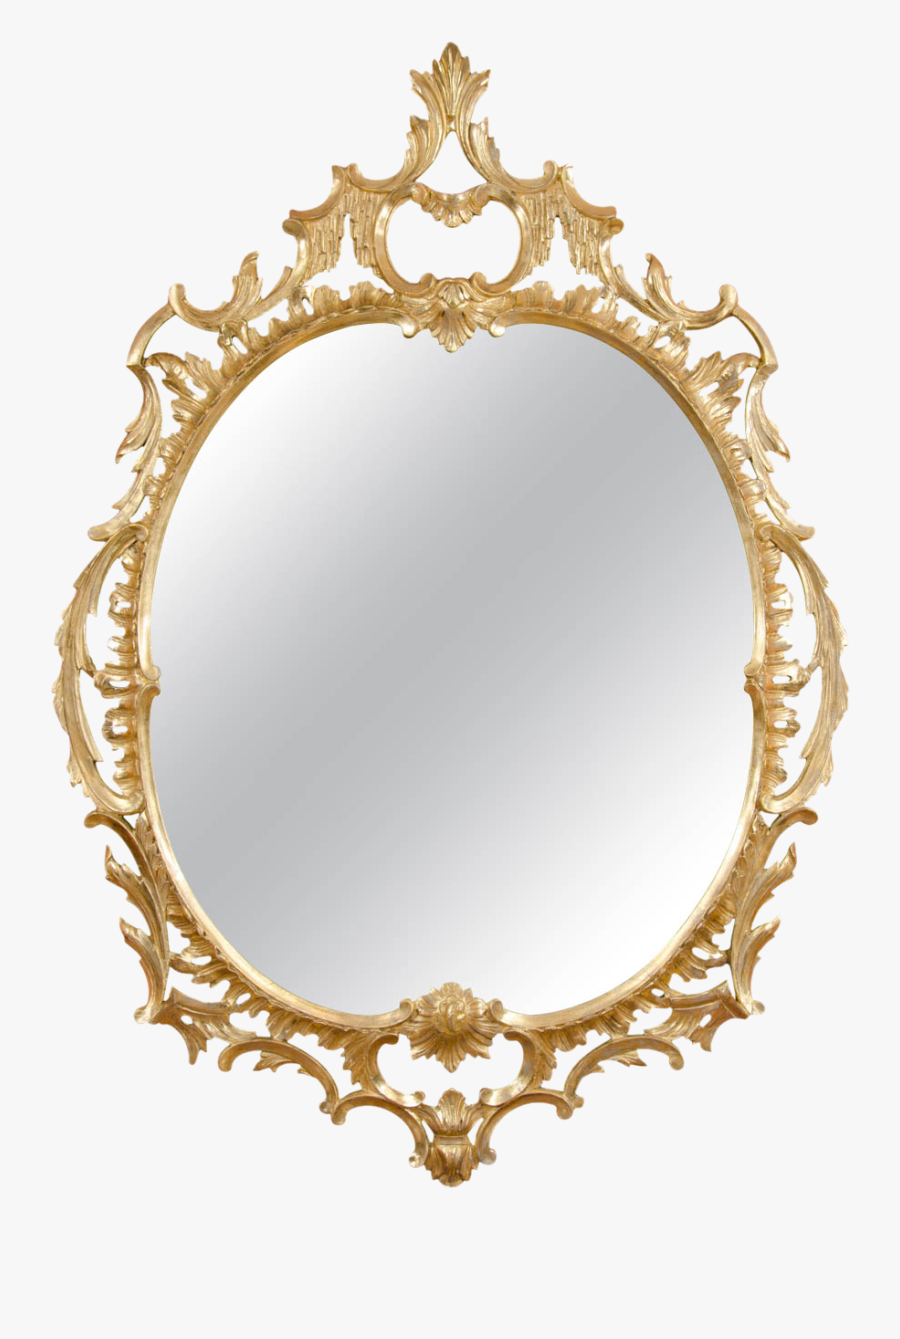 Mirror Clip Art - Mirror Clipart Png, Transparent Clipart